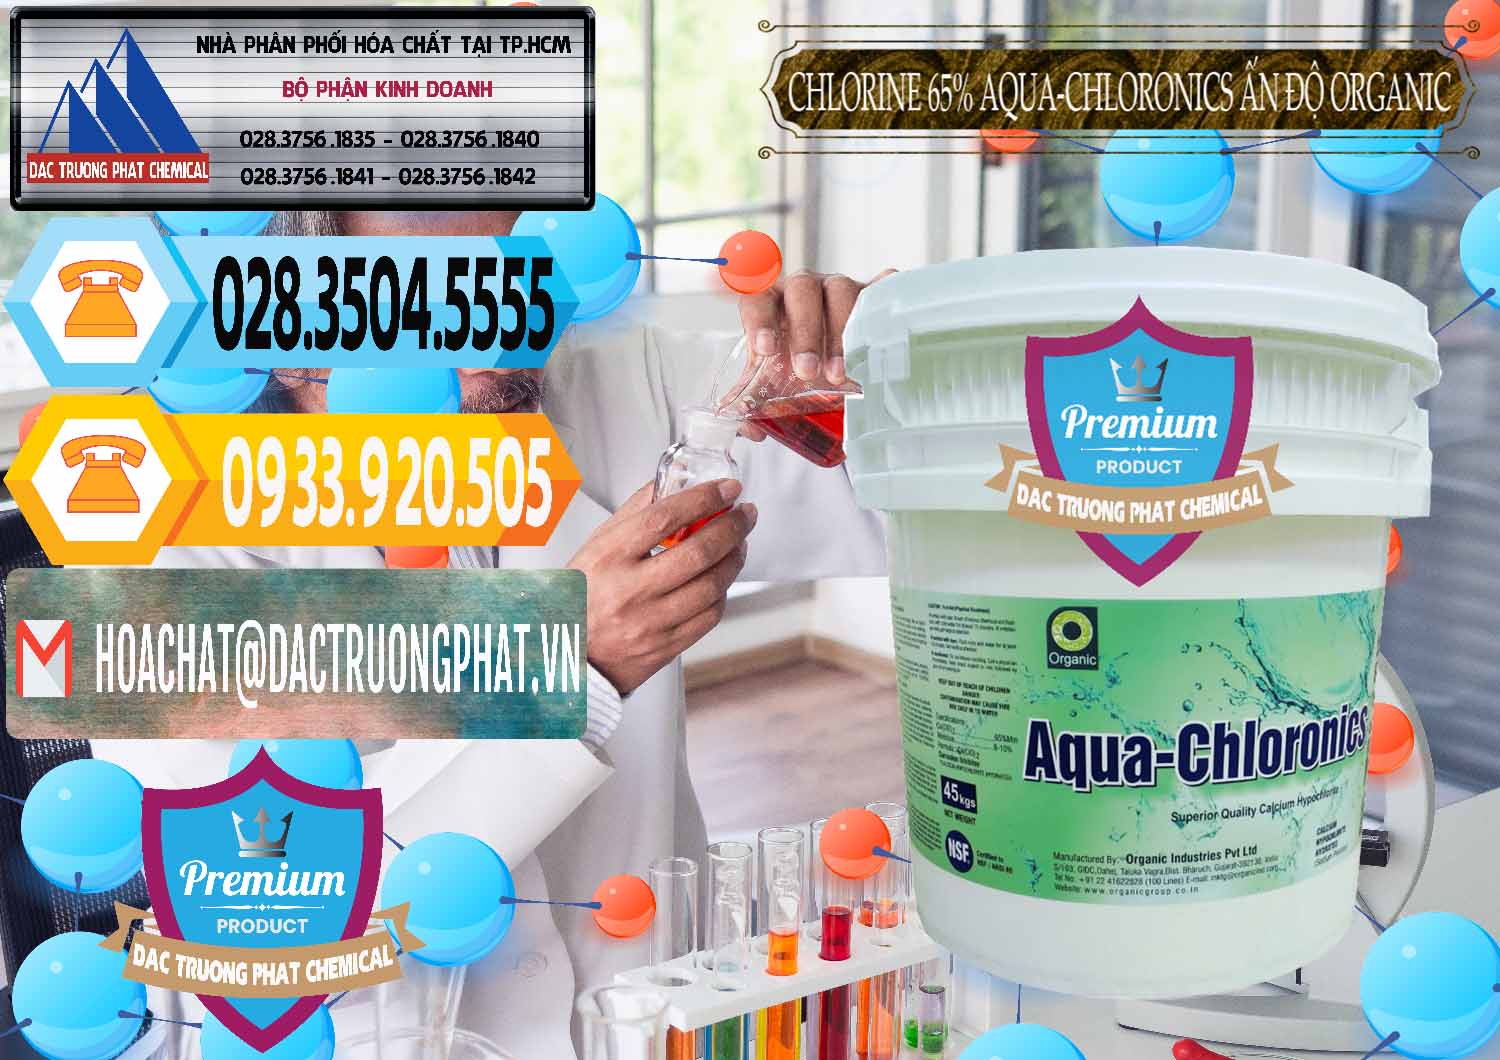 Nhà phân phối và bán Chlorine – Clorin 65% Aqua-Chloronics Ấn Độ Organic India - 0210 - Cty cung cấp & kinh doanh hóa chất tại TP.HCM - hoachattayrua.net